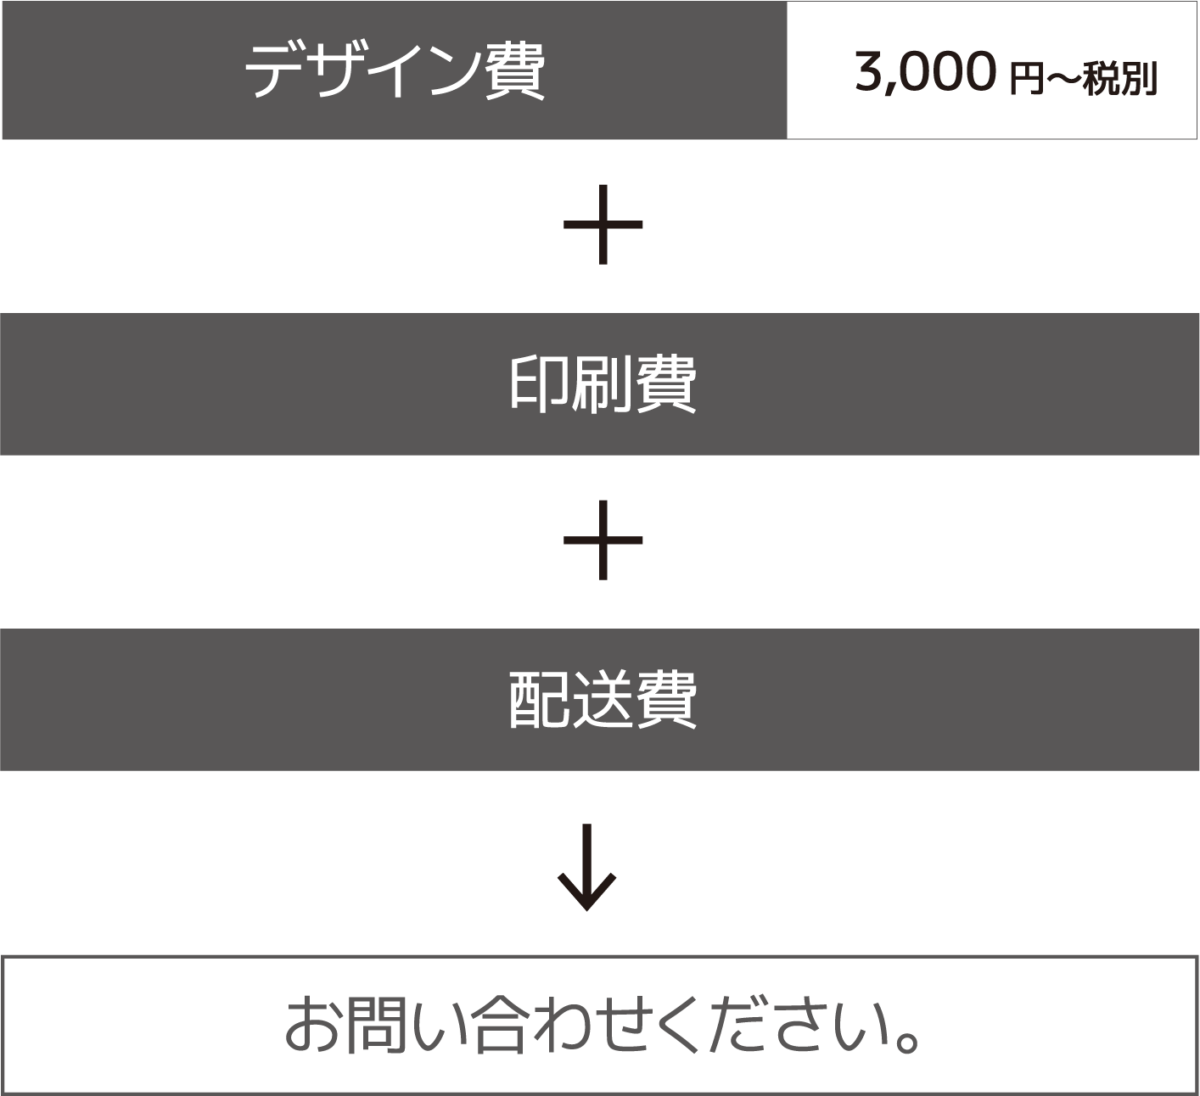 デザイン費3,000円〜税別 + 印刷費 + 配送費 → お問い合わせください。